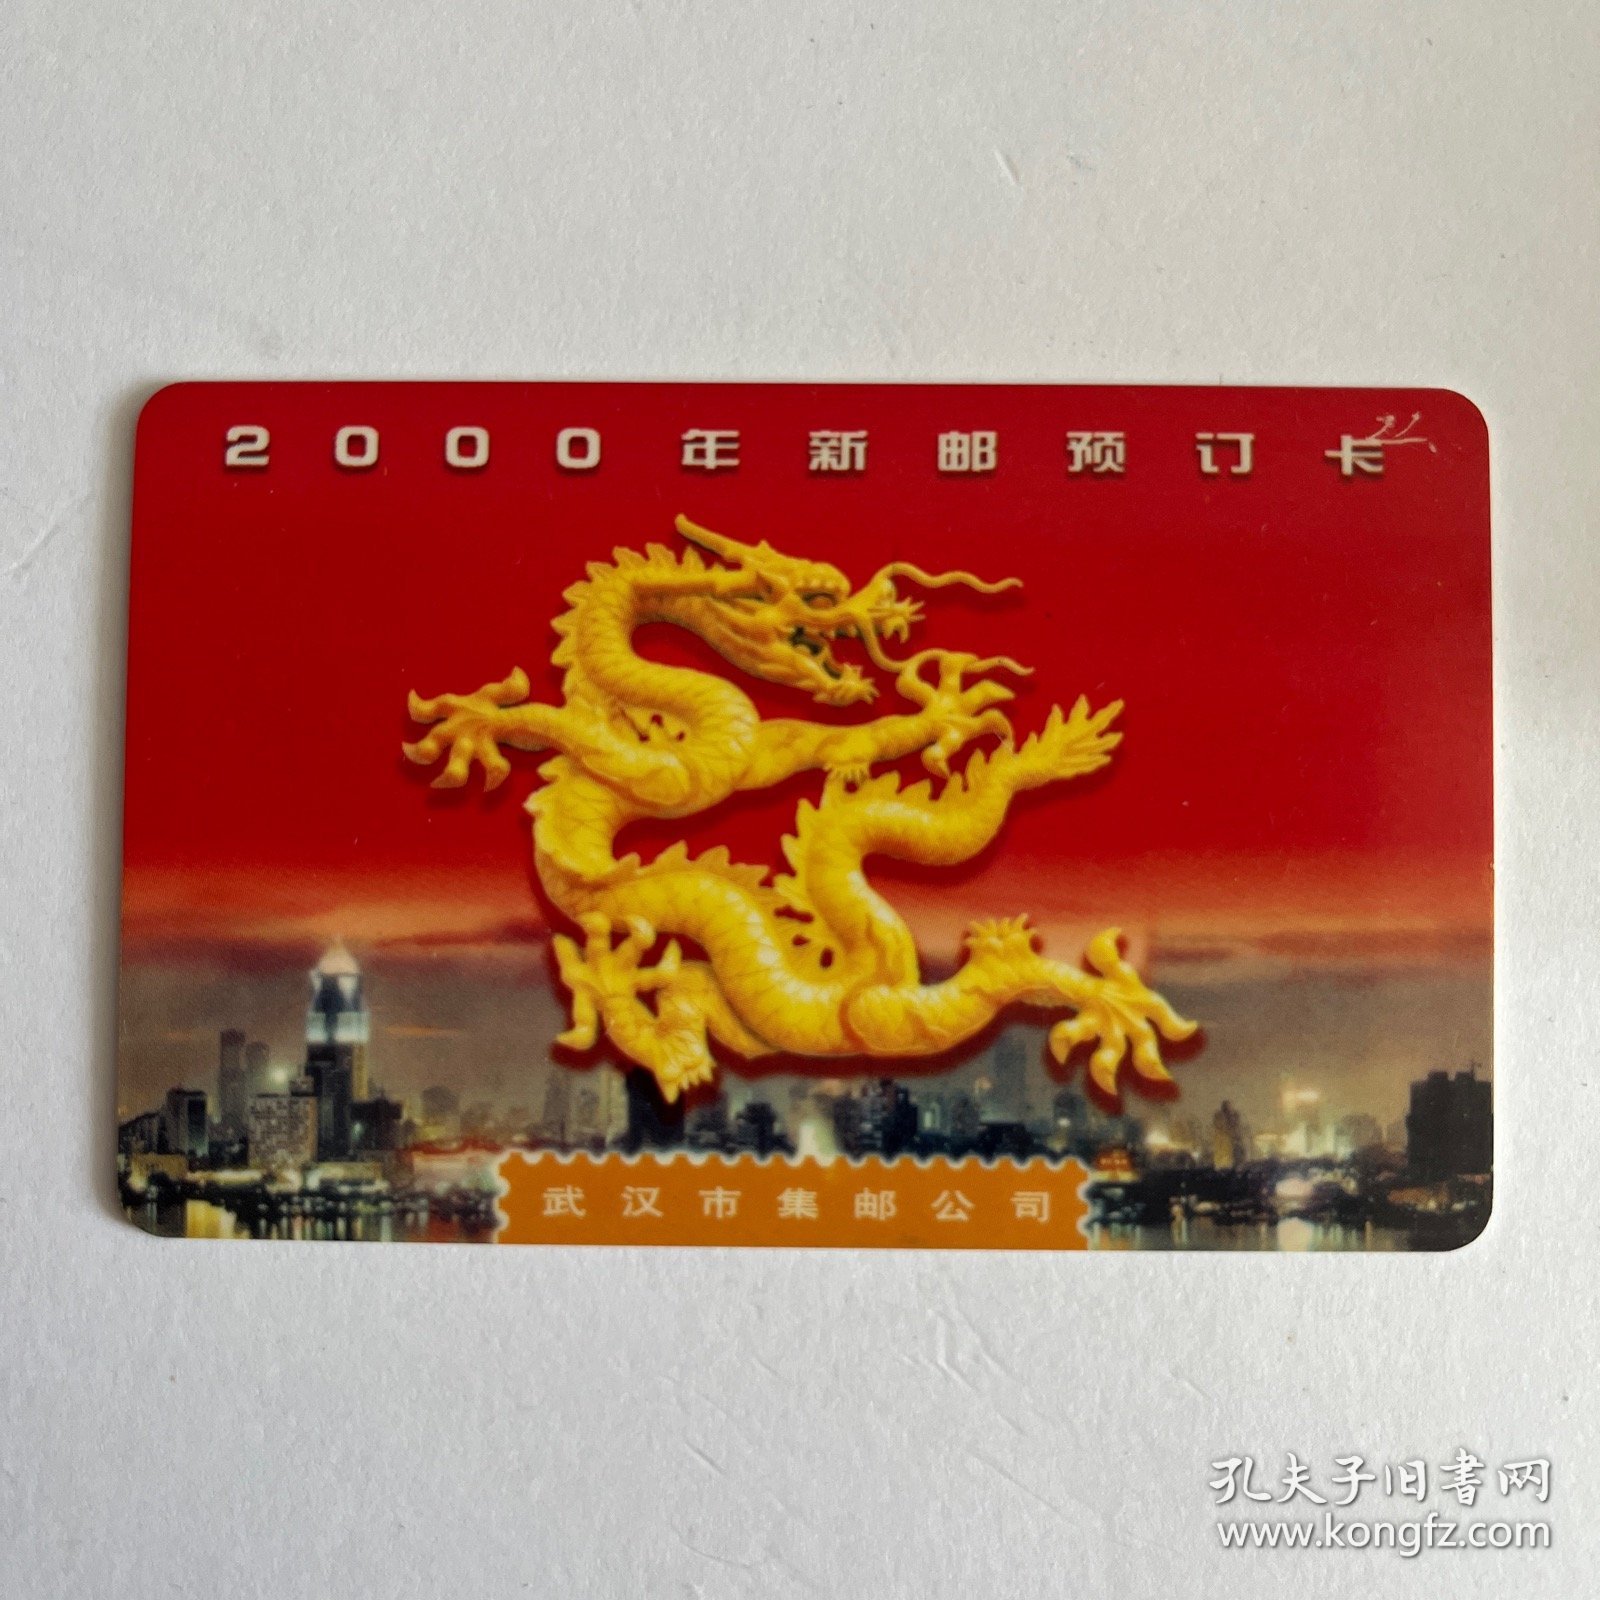 2000年武汉集邮卡